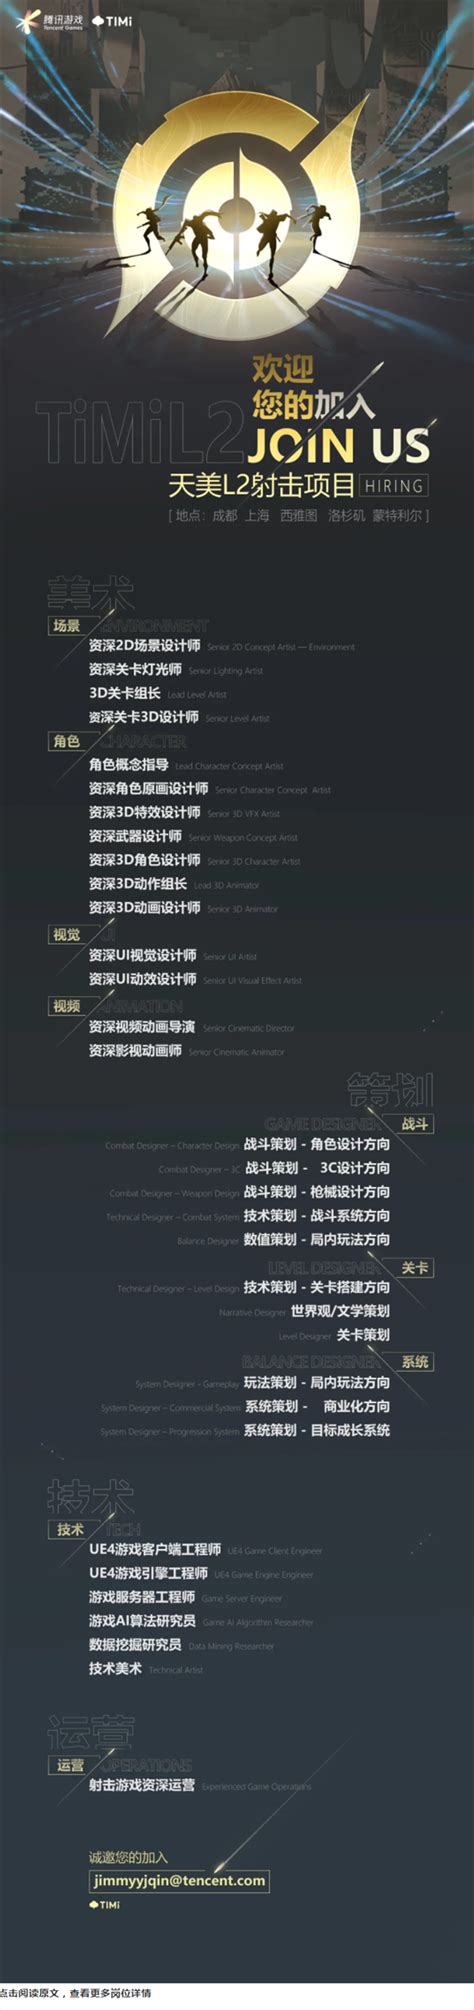 腾讯发布王者荣耀IP射击项目招聘信息 虚幻4打造_游戏频道_中华网